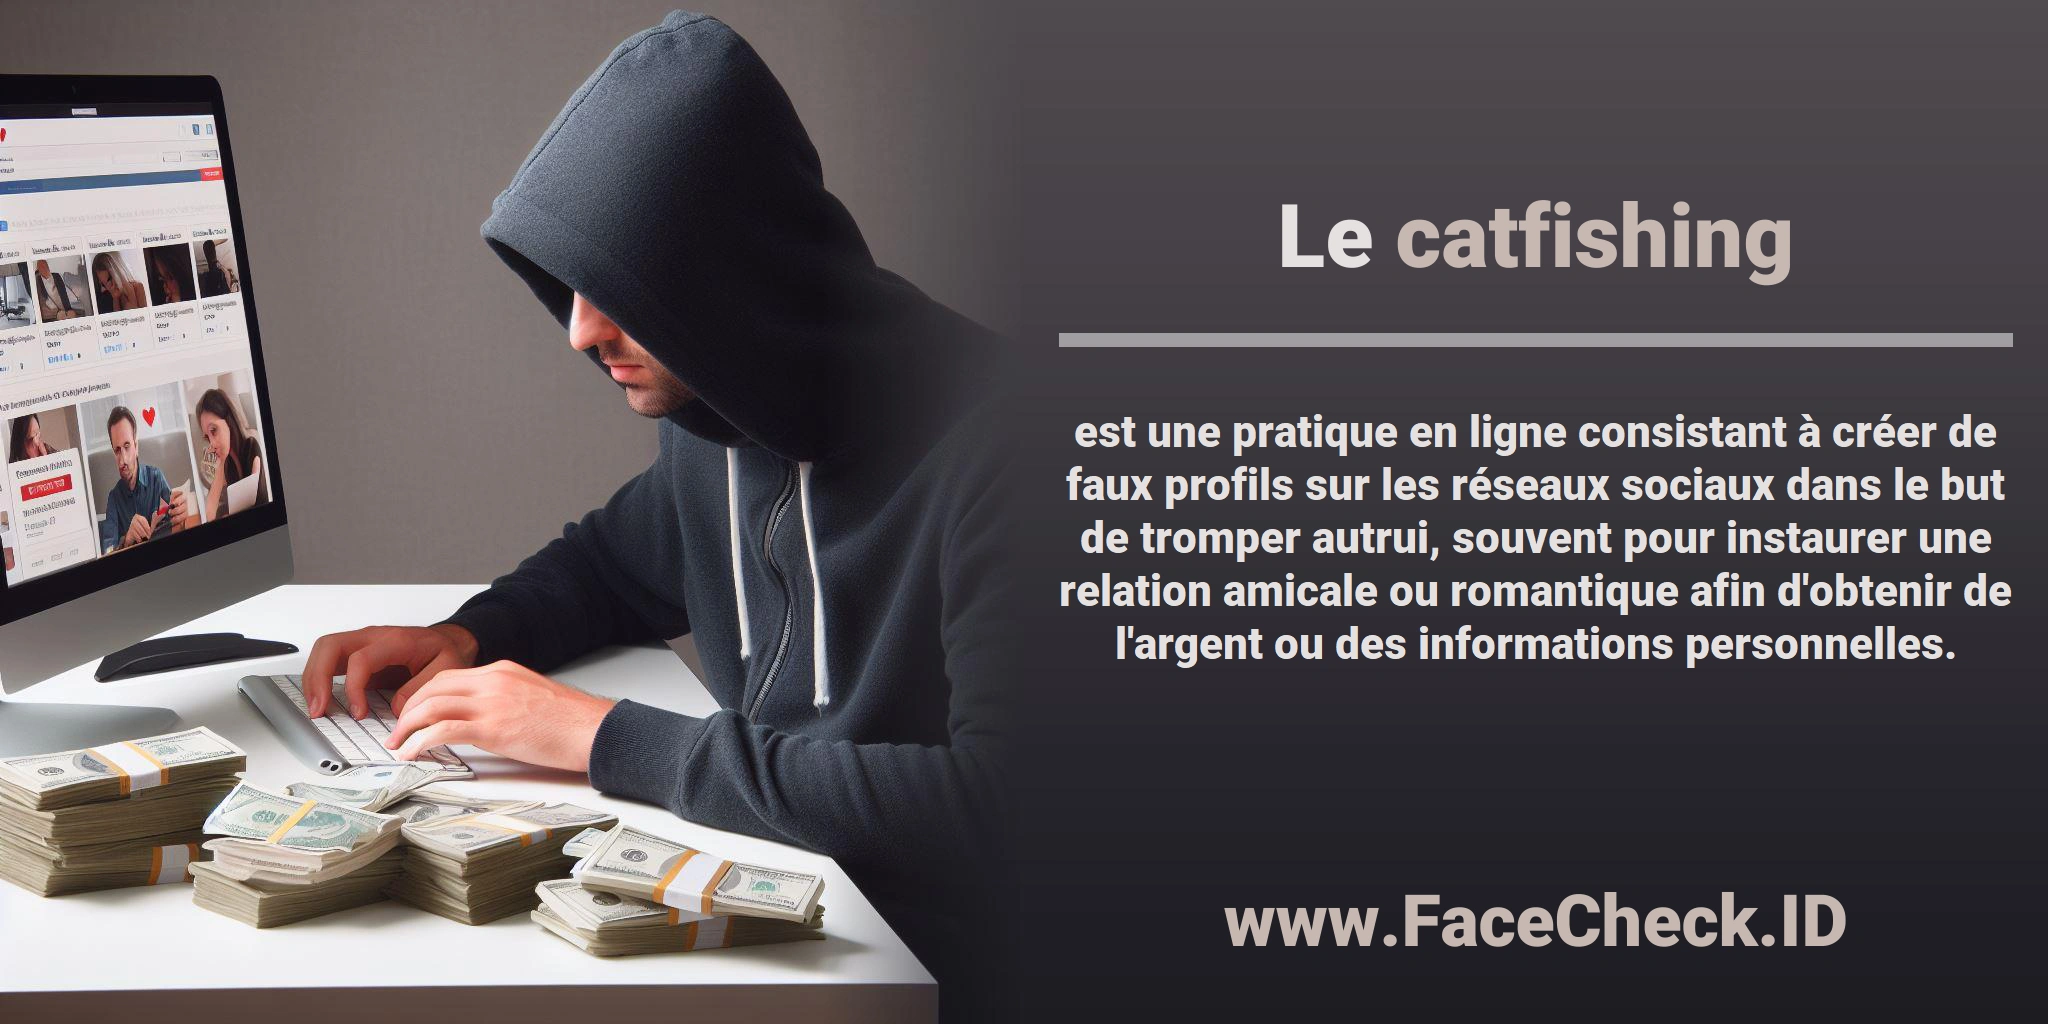 Le <b>catfishing</b> est une pratique en ligne consistant à créer de faux profils sur les réseaux sociaux dans le but de tromper autrui, souvent pour instaurer une relation amicale ou romantique afin d'obtenir de l'argent ou des informations personnelles.